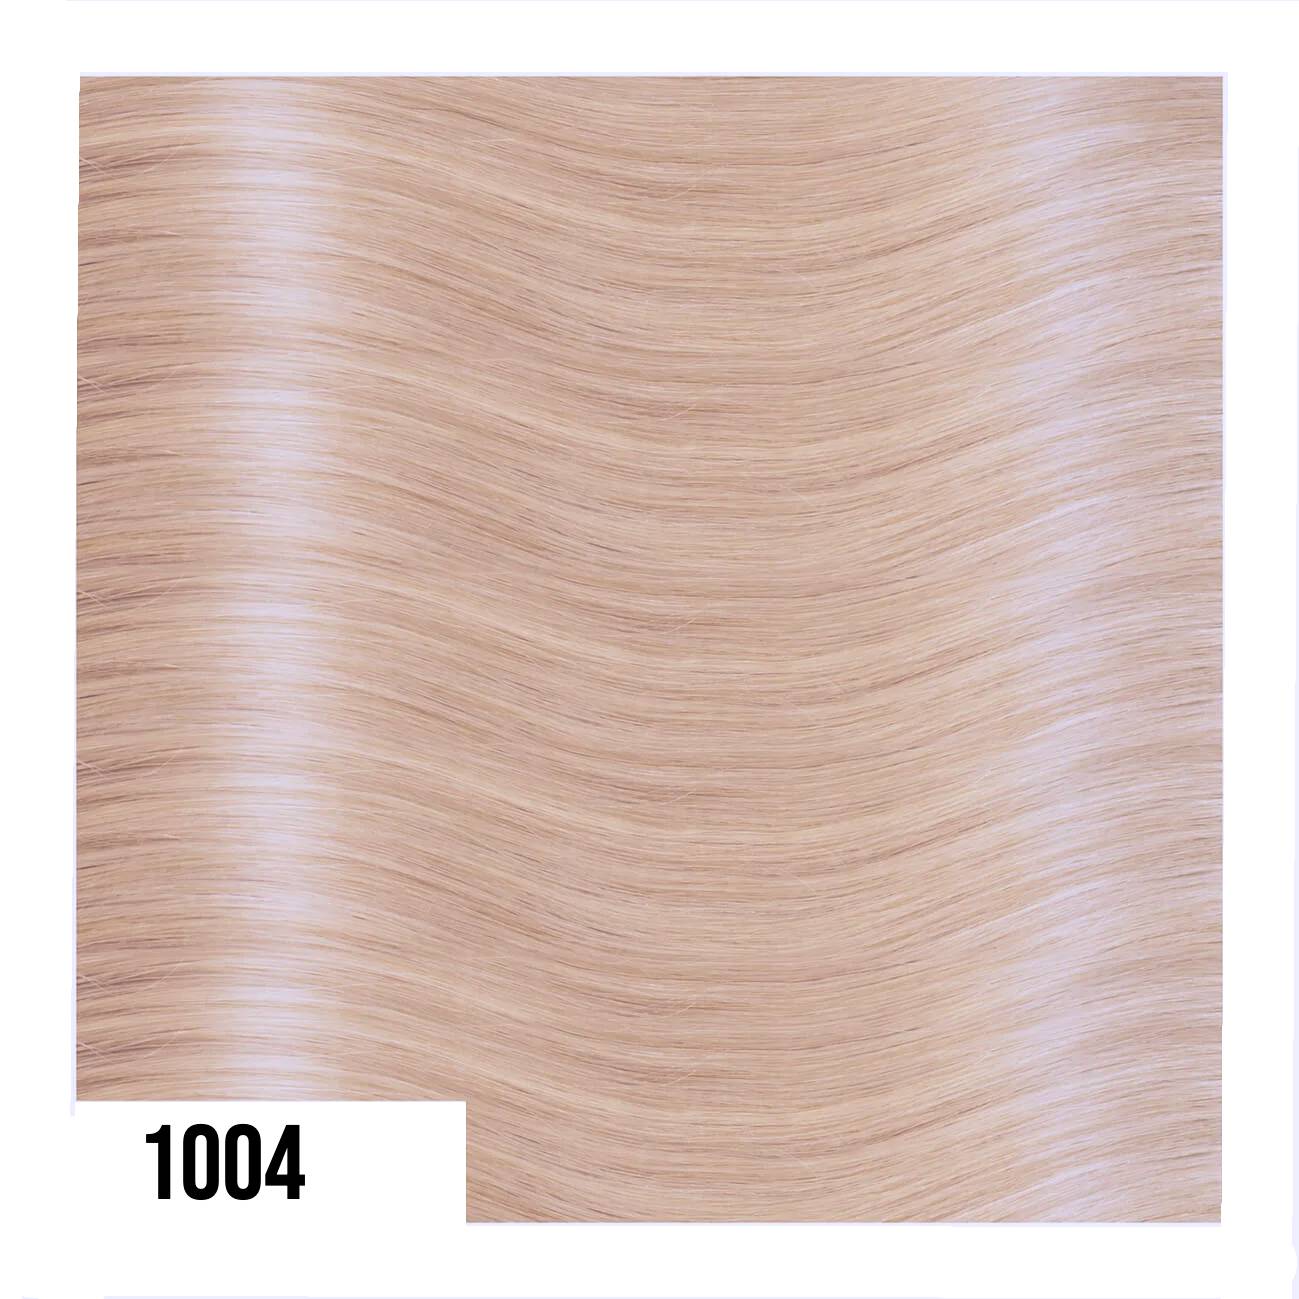 In Tape Hair extension di Capelli Lisci (40cm/45cm)